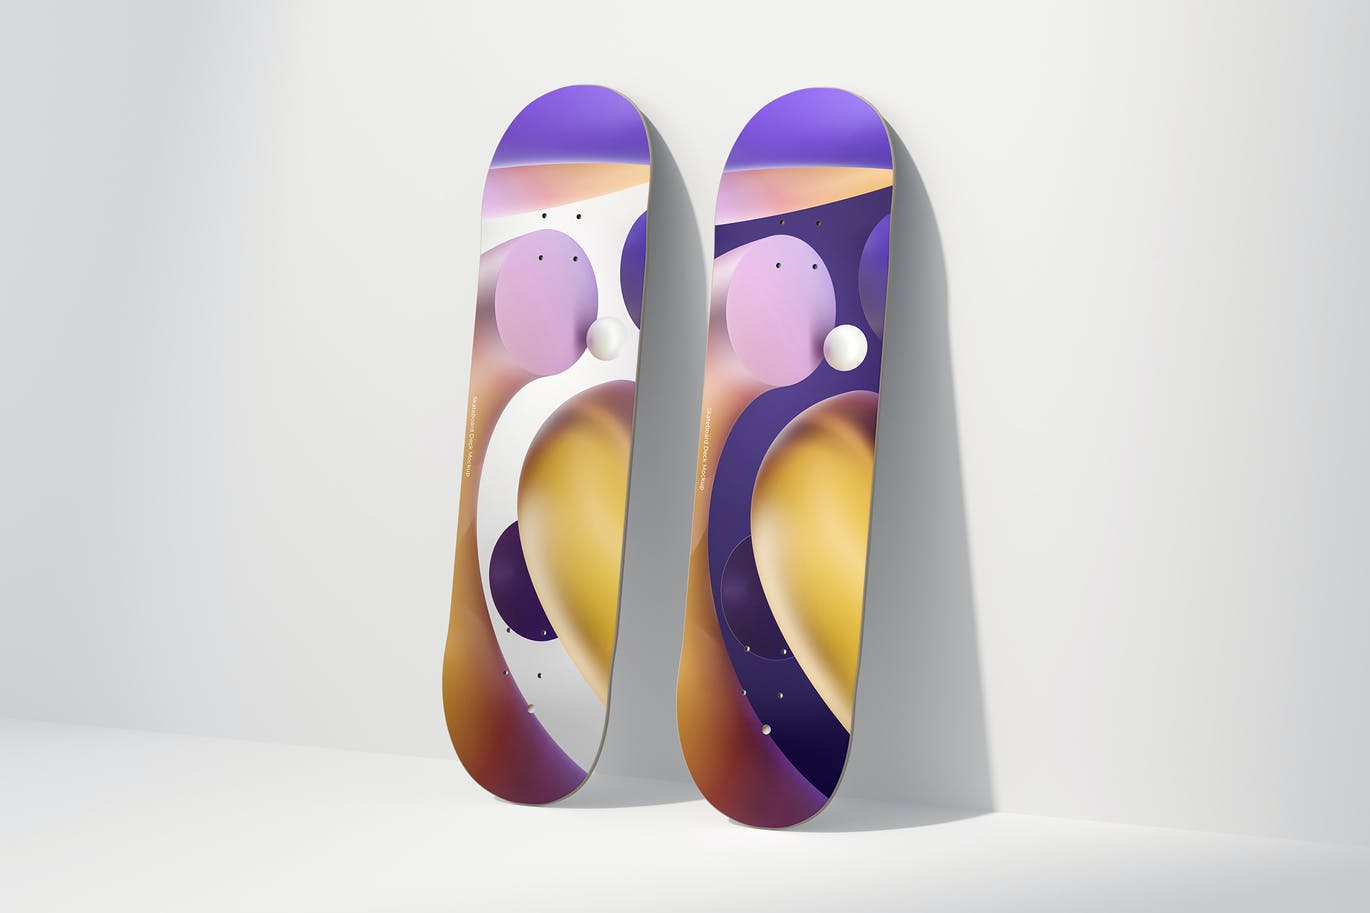 少见稀有的滑雪板单板VI设计样机展示模型mockups